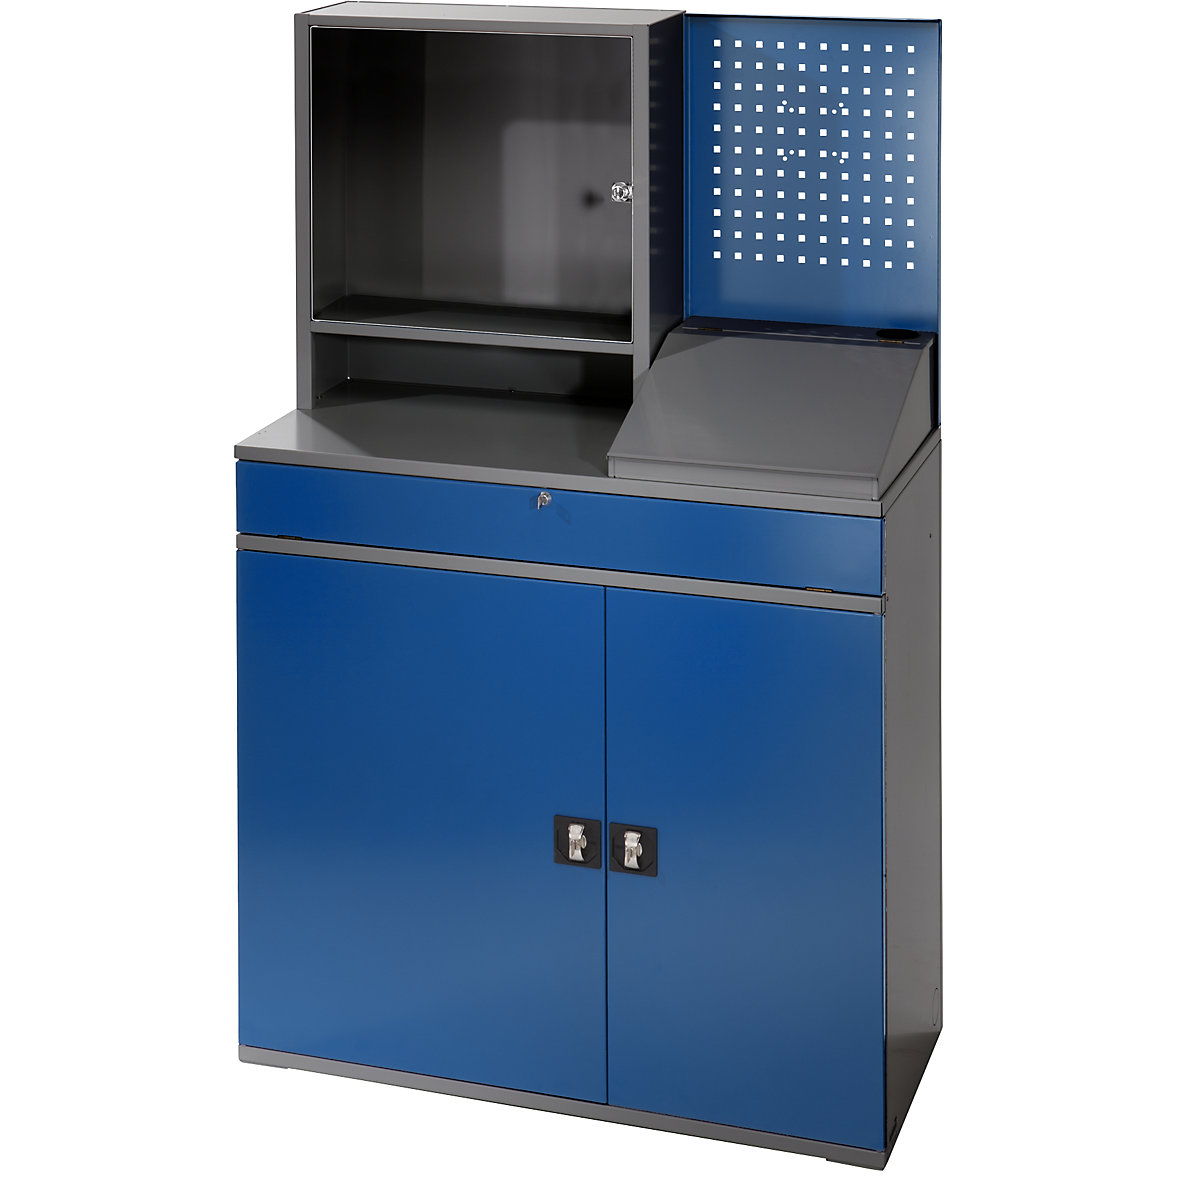 RAU – Estação de trabalho para computadores, caixa para monitor, 2 prateleiras extraíveis, largura 1100 mm, antracite / azul genciana